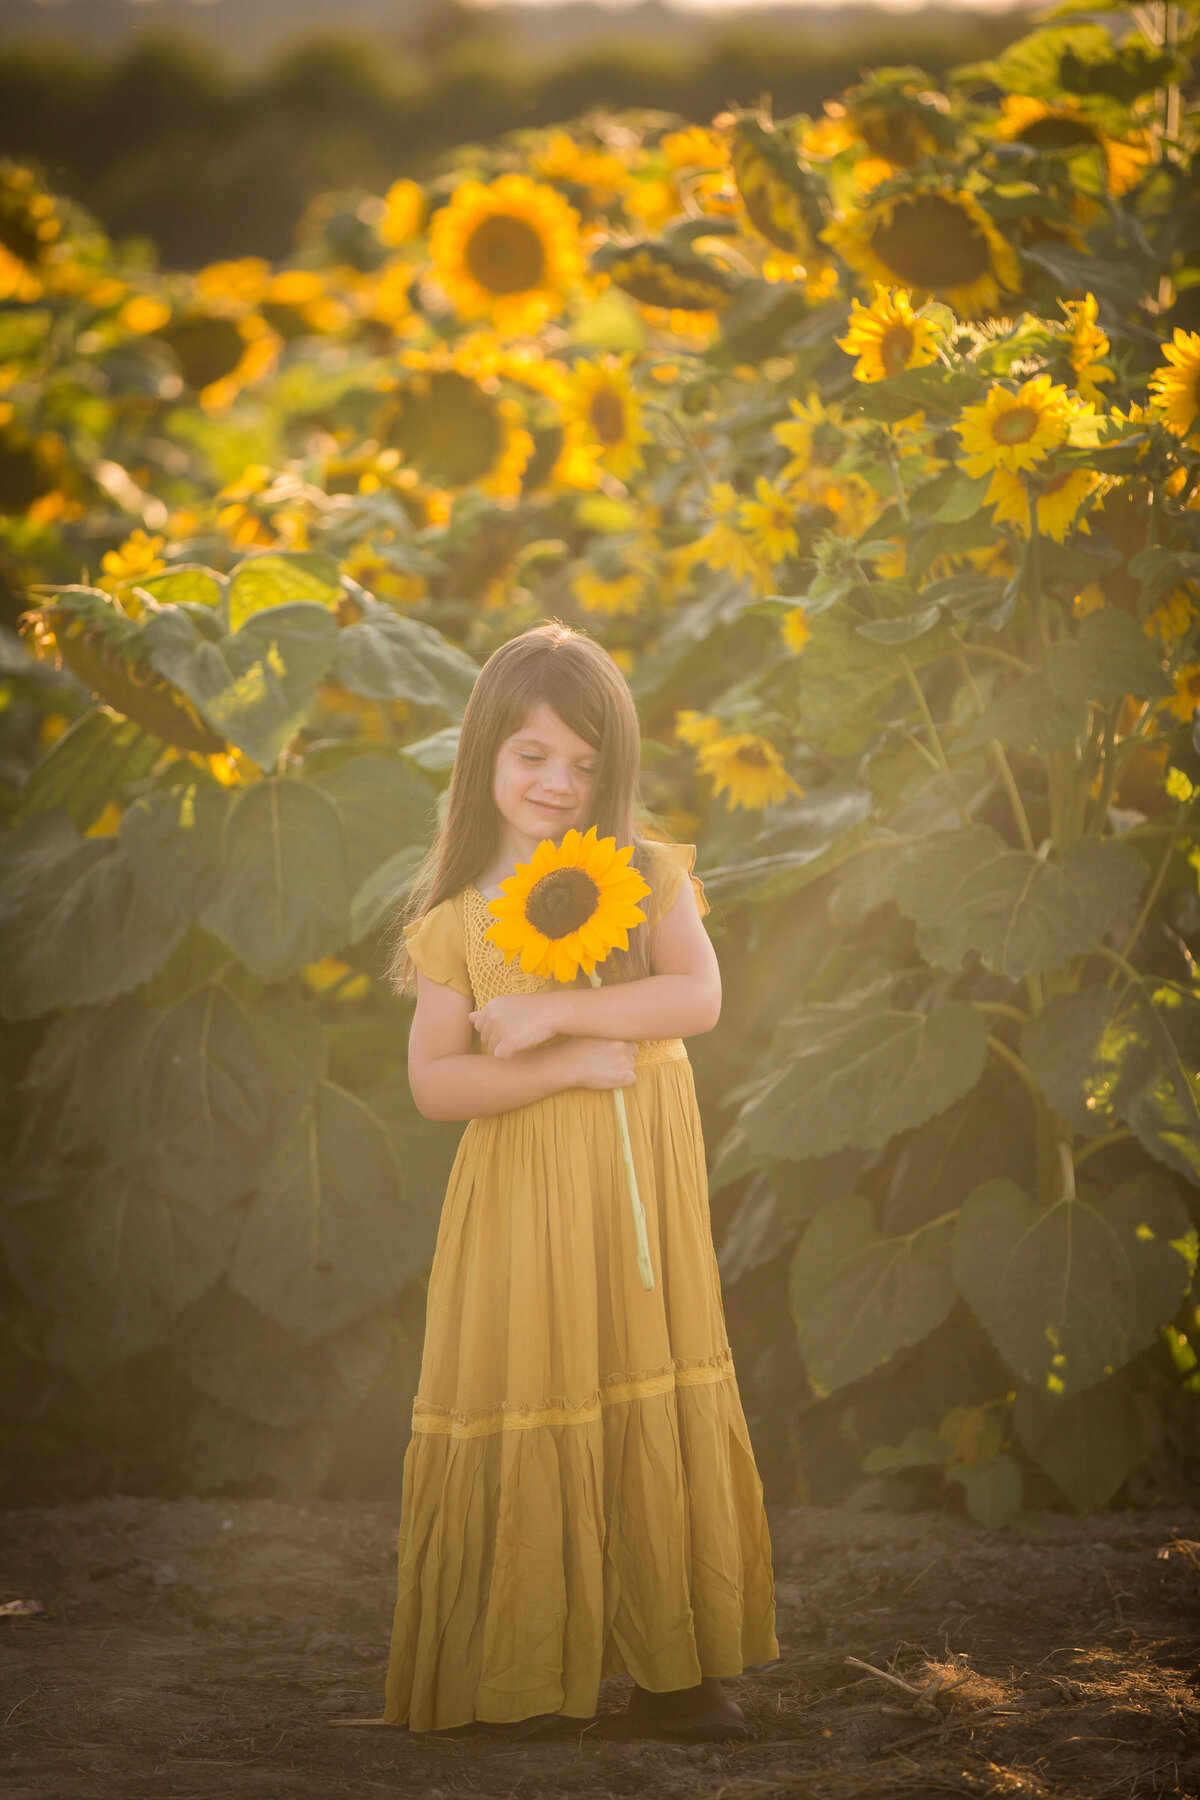 Beautiful little girl holding sunflower in field of flowers